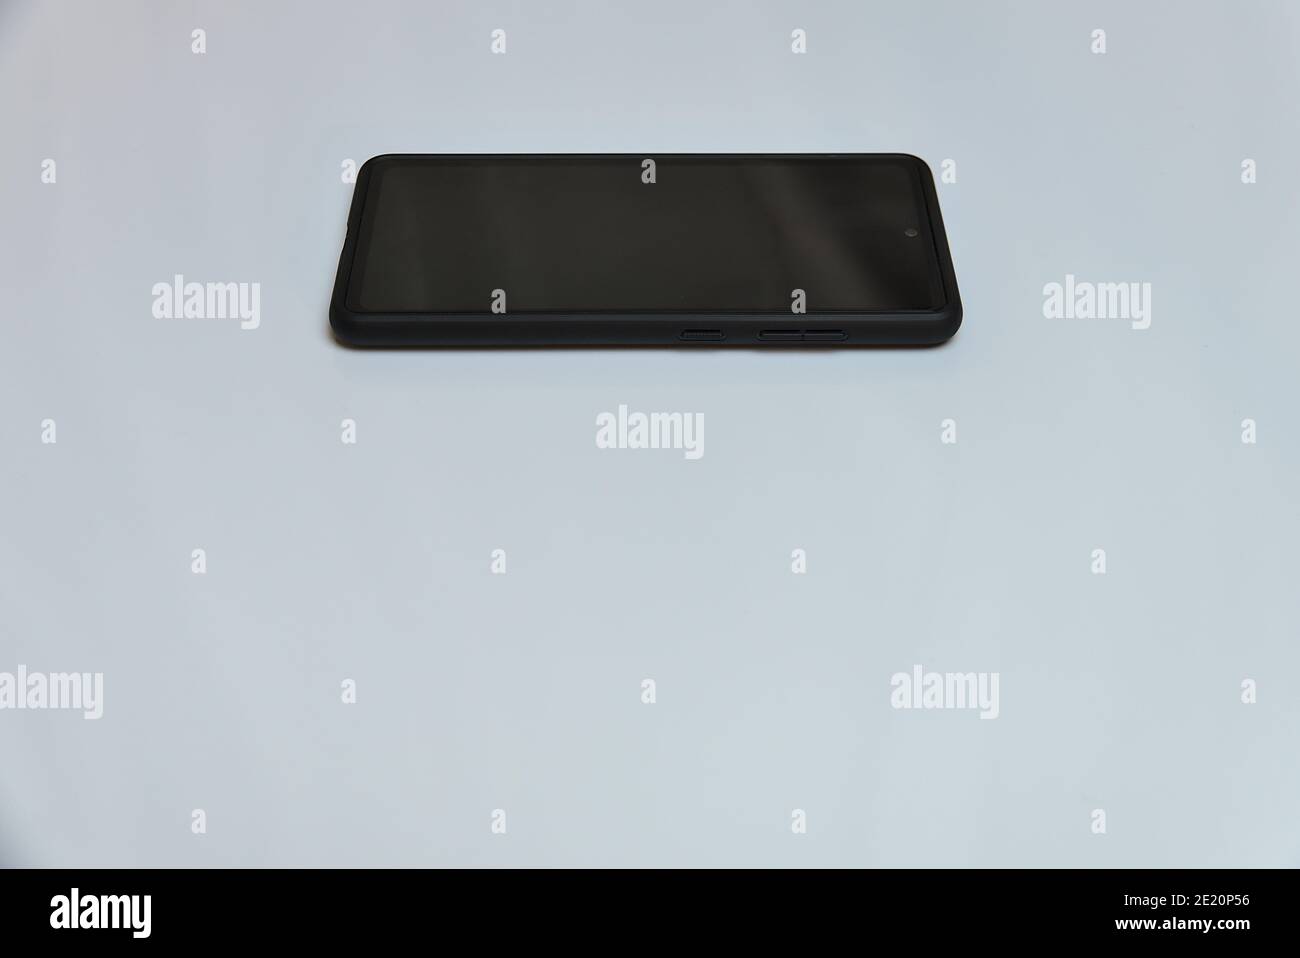 Smartphone mobile noir isolé sur fond blanc avec espace de copie Banque D'Images